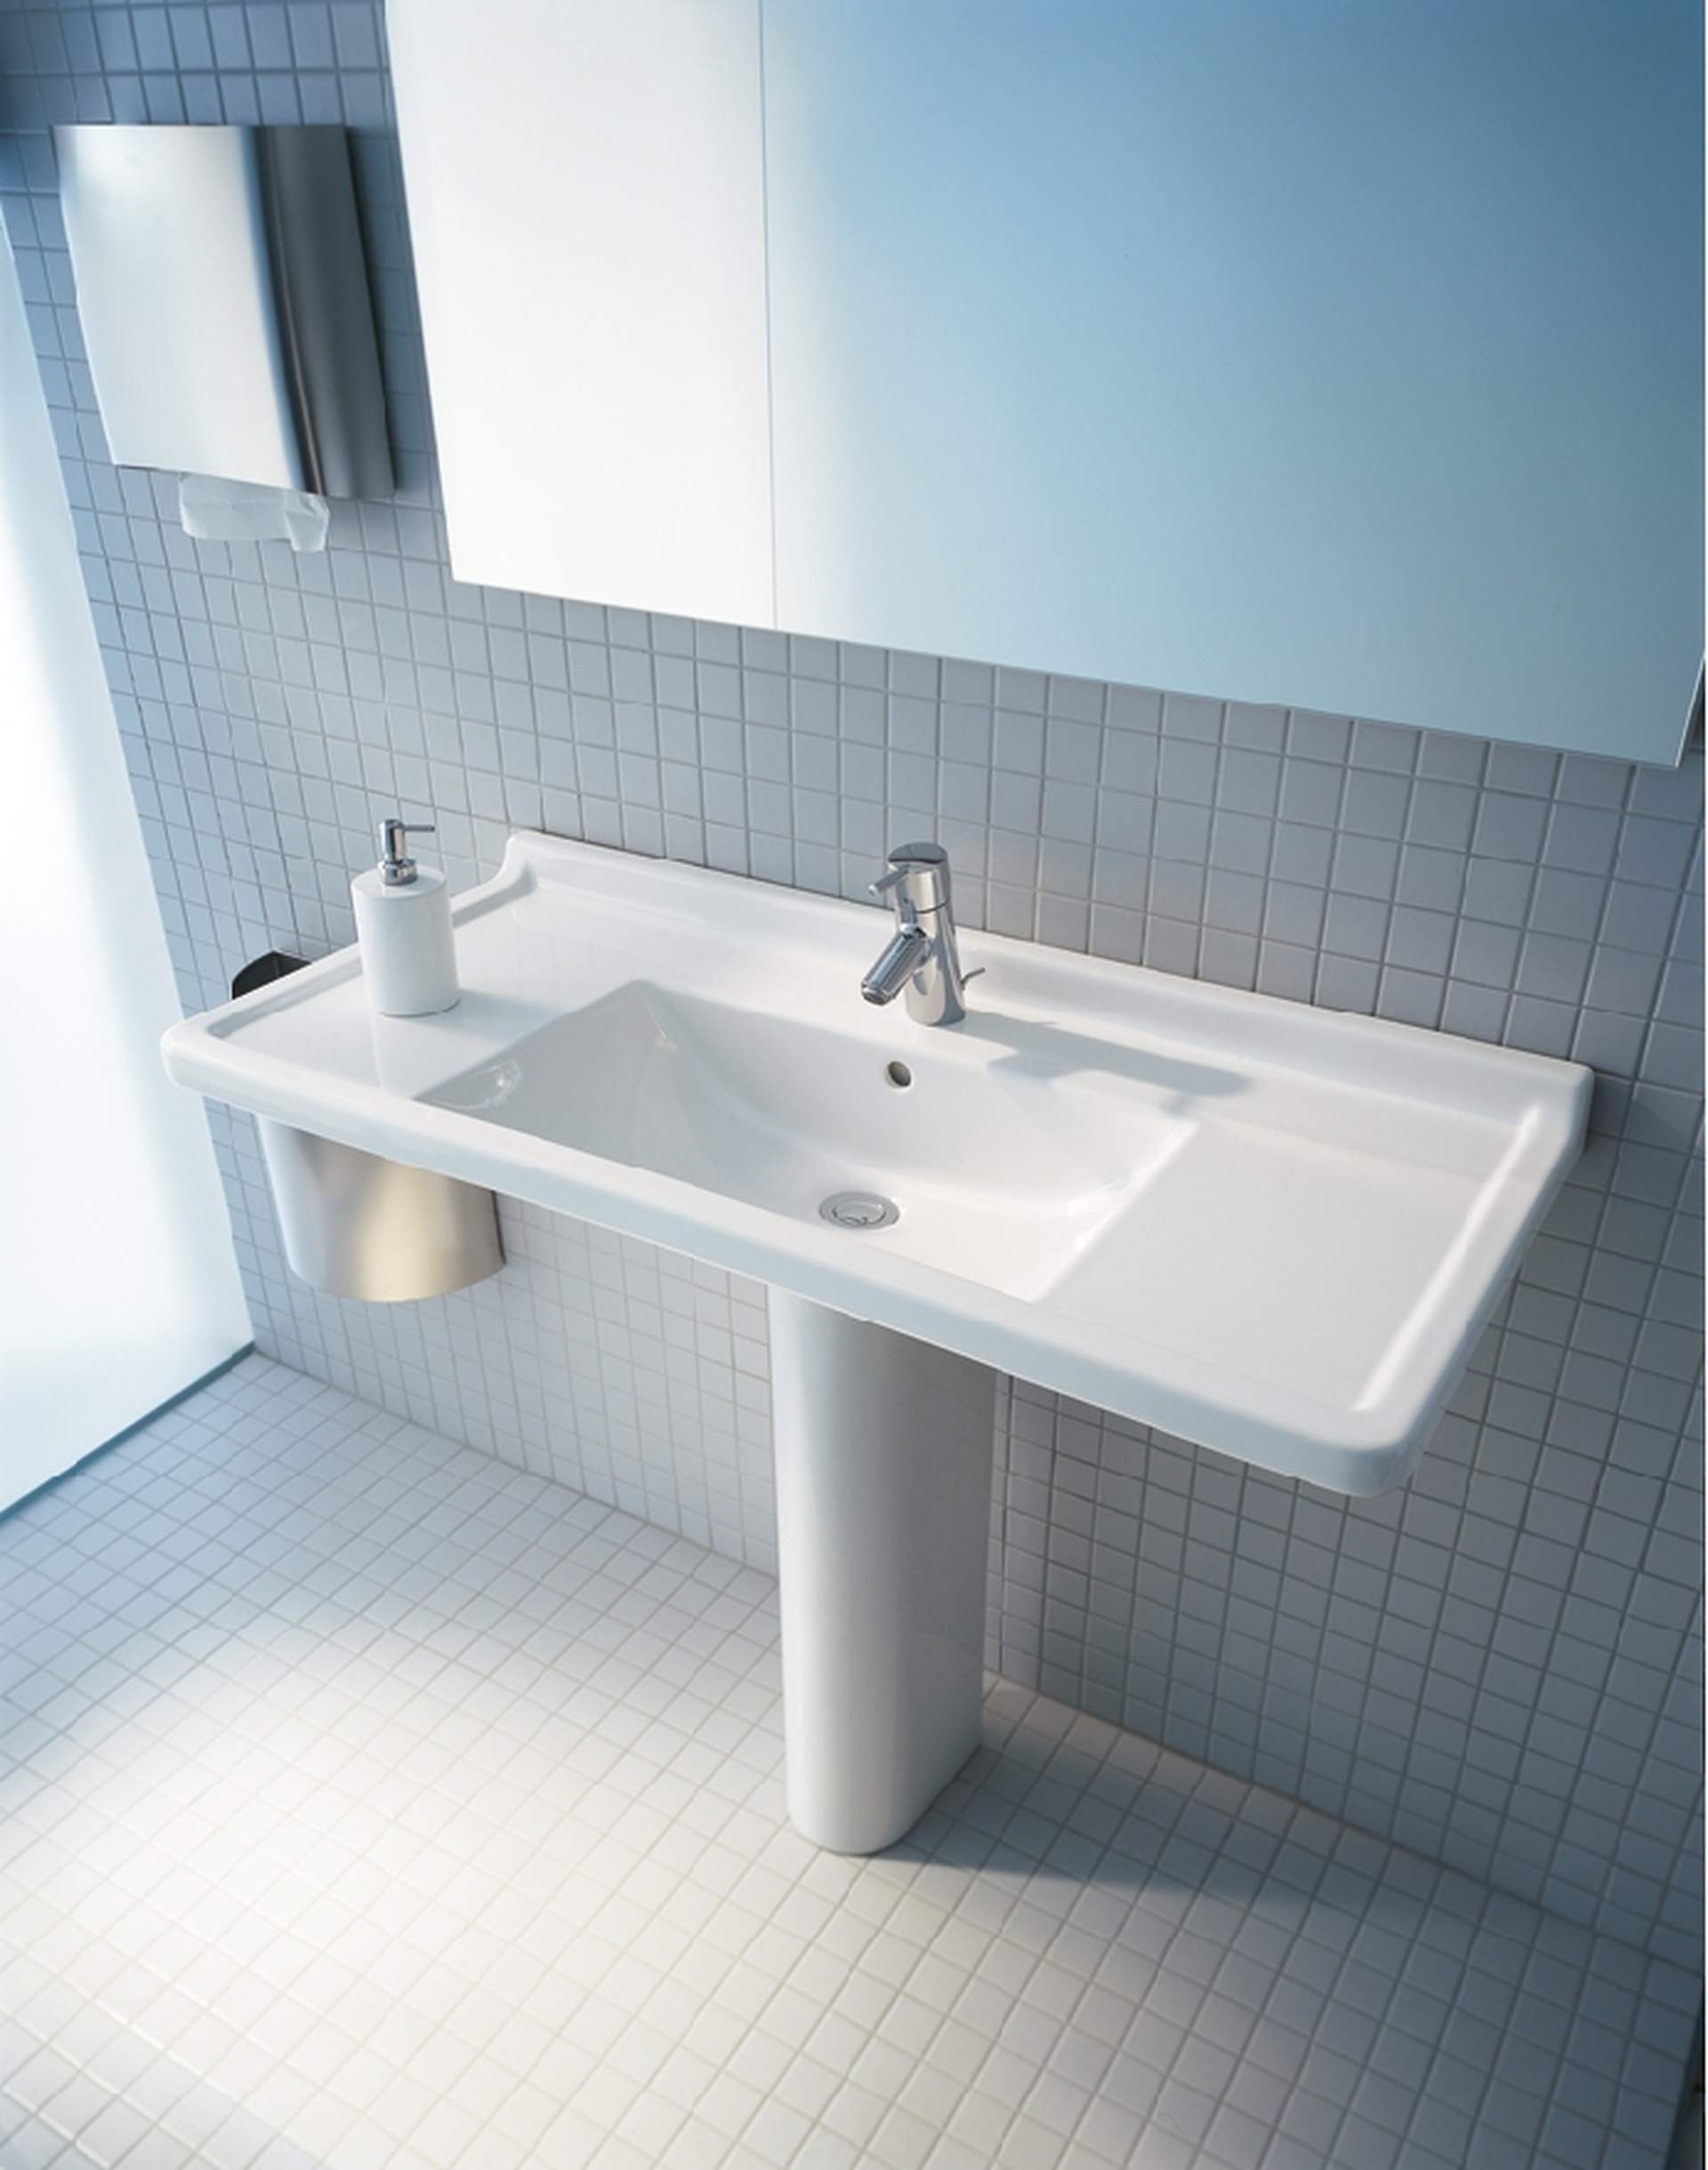 Furniture washbasin, 030410